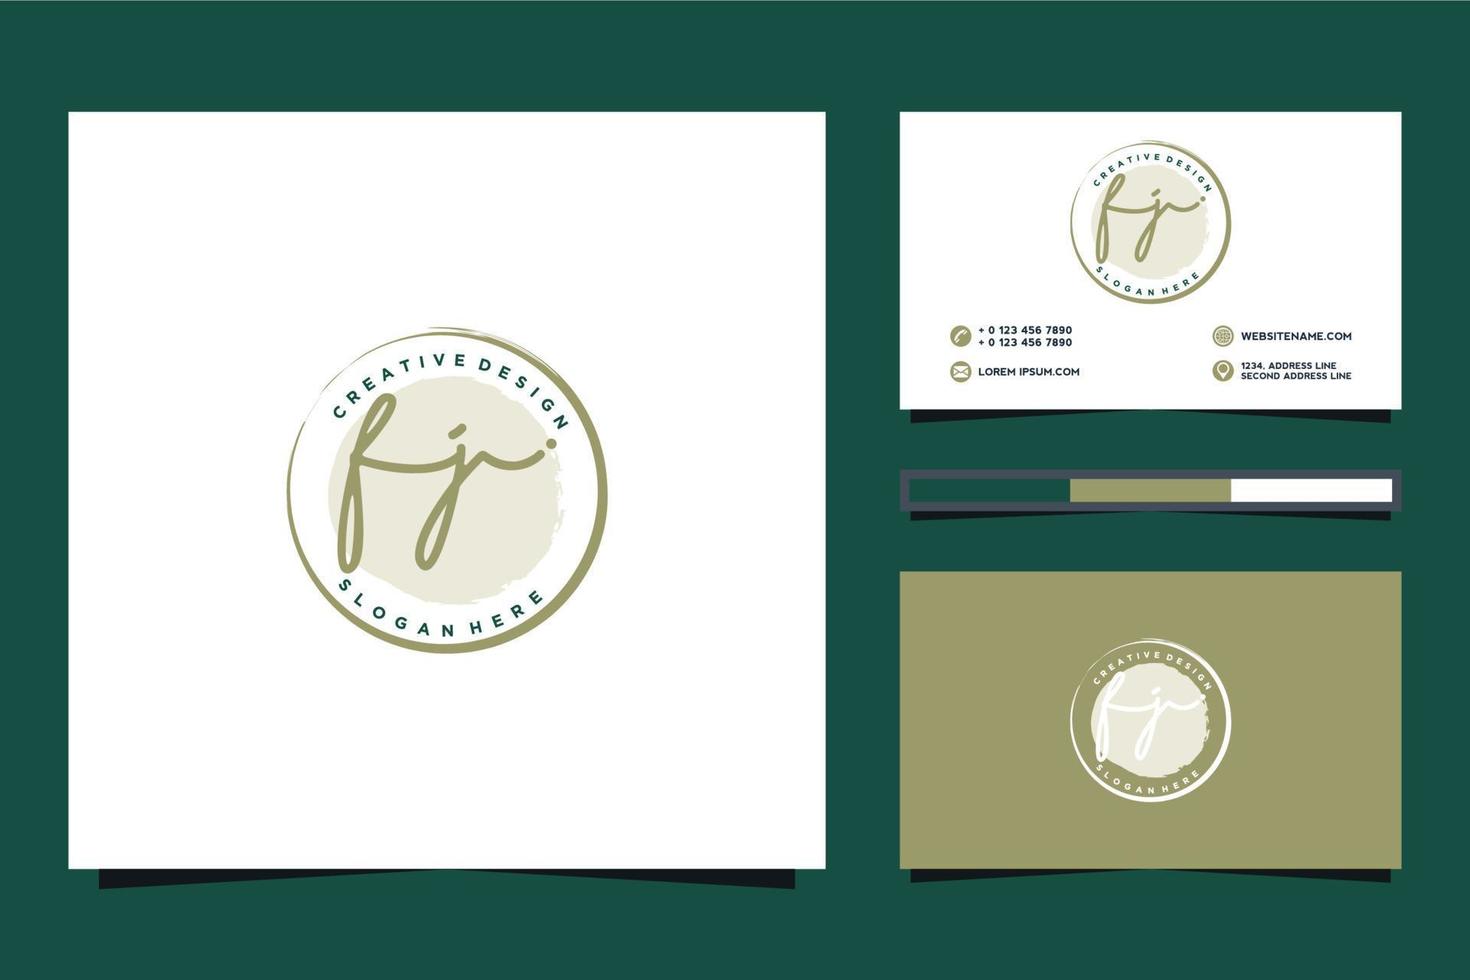 colecciones iniciales de logotipos femeninos fj y vector premium de plantilla de tarjeta de visita